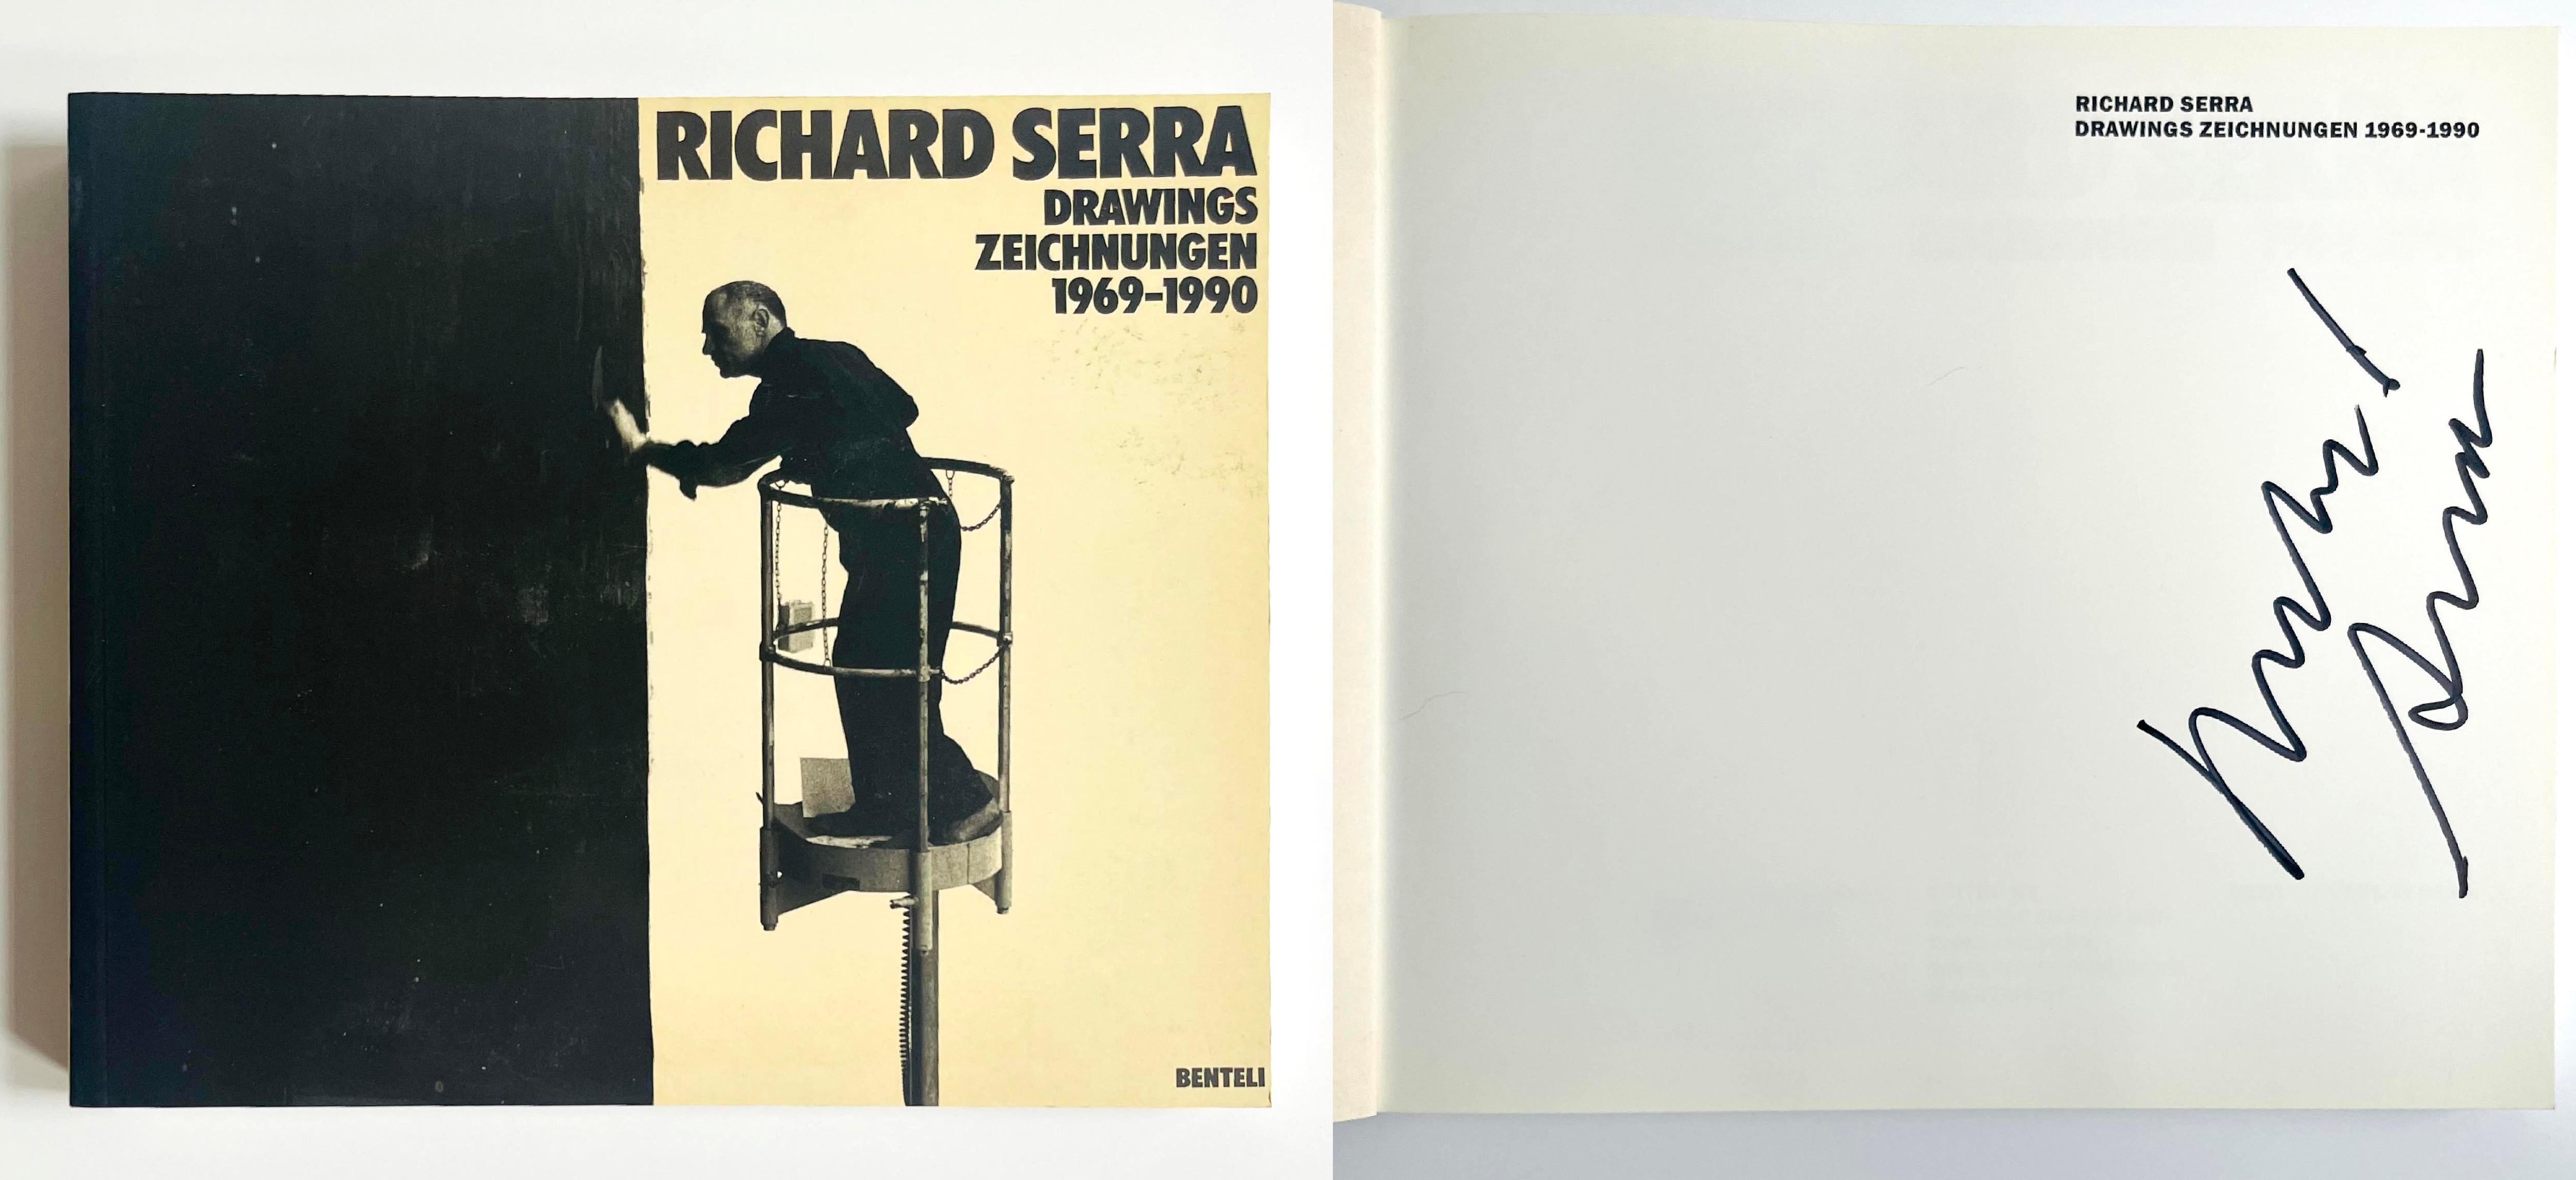 Richard Serra Drawings Zeichnungen 1969-1990 (Signé à la main par Richard Serra), 1990
Livre monographique souple (signé par Richard Serra)
Signé à la main par Richard Serra sur la moitié de la page de titre.
9 3/4 × 11 × 1 pouces
Ce livre à